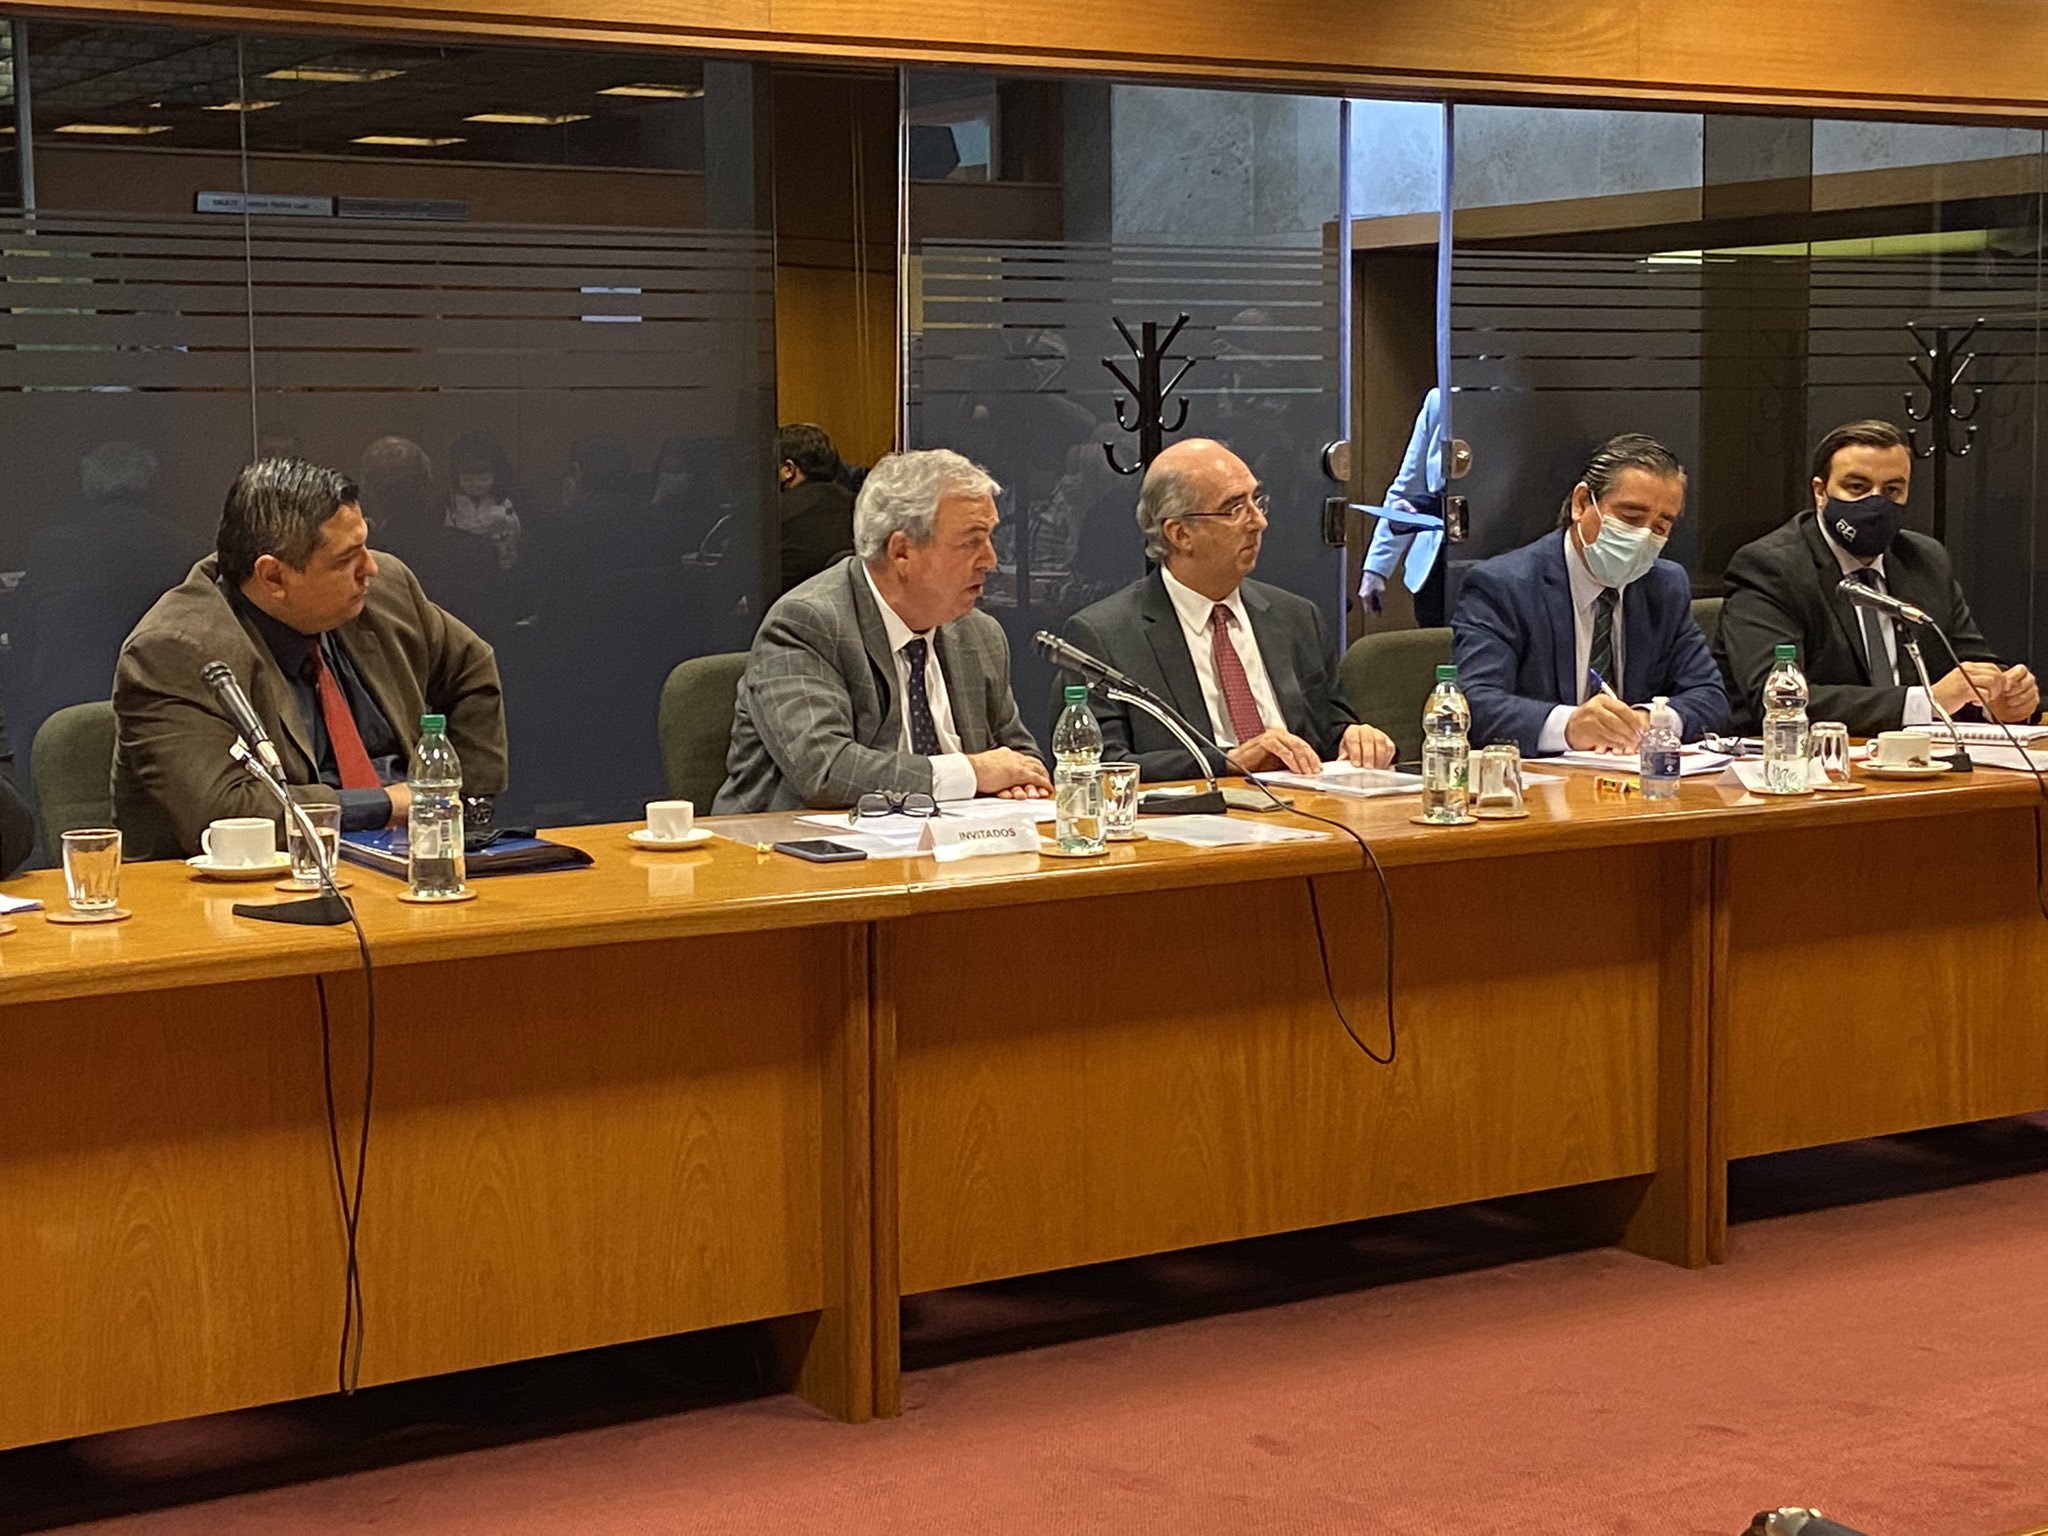 Heber compareció el pasado lunes ante Diputados por el aumento en la inseguridad y actos delictivos. Foto: Twitter / Luis Alberto Heber